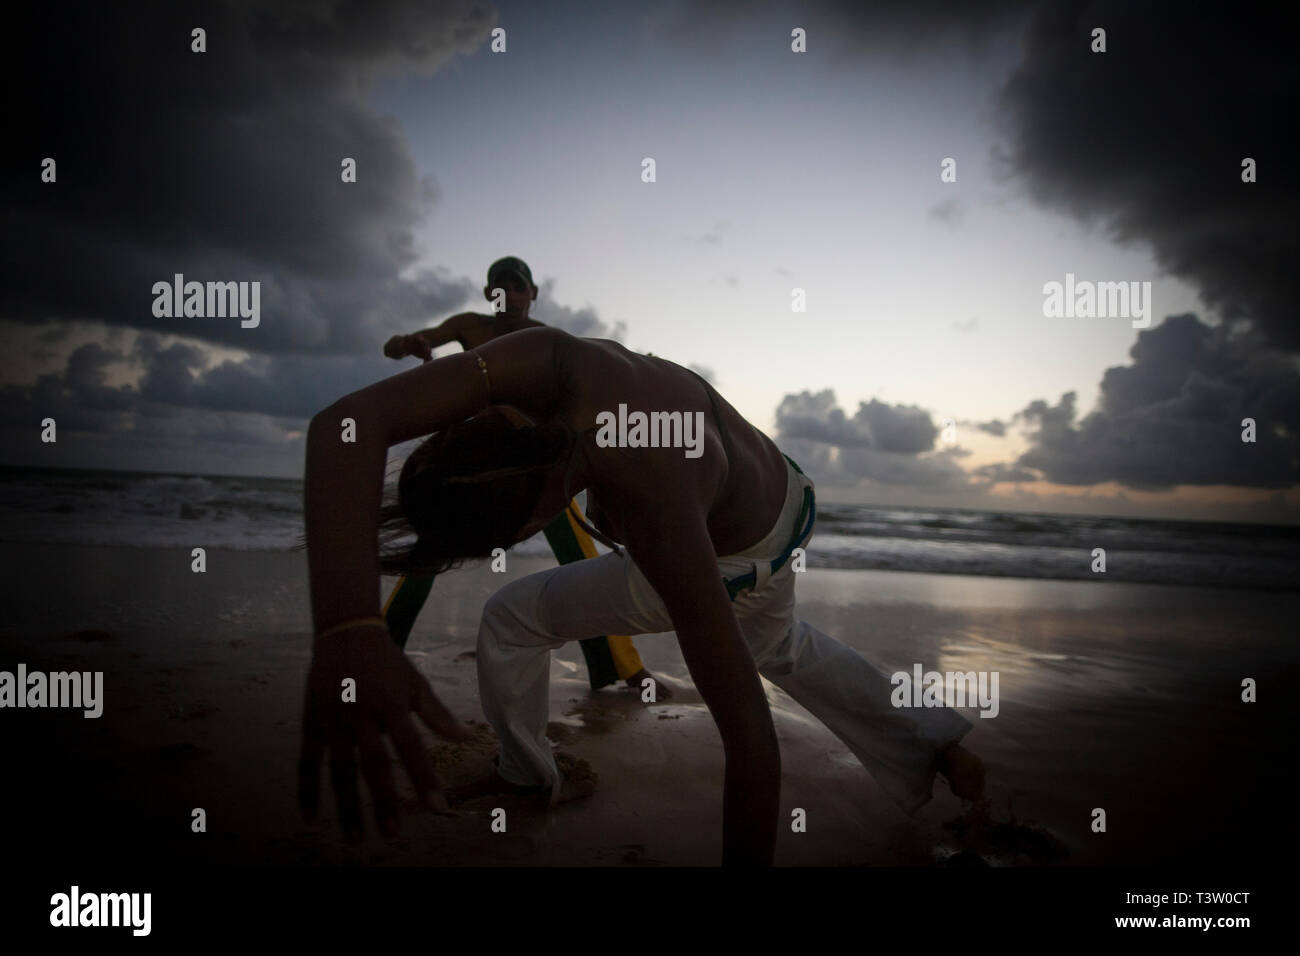 La capoeira, un art martial brésilien qui combine des éléments de danse, acrobatie et musique, et est généralement considéré comme un jeu. Plage de Ponta Negra, Natal, la ville de l'État du Rio Grande do Norte, au Brésil. Banque D'Images